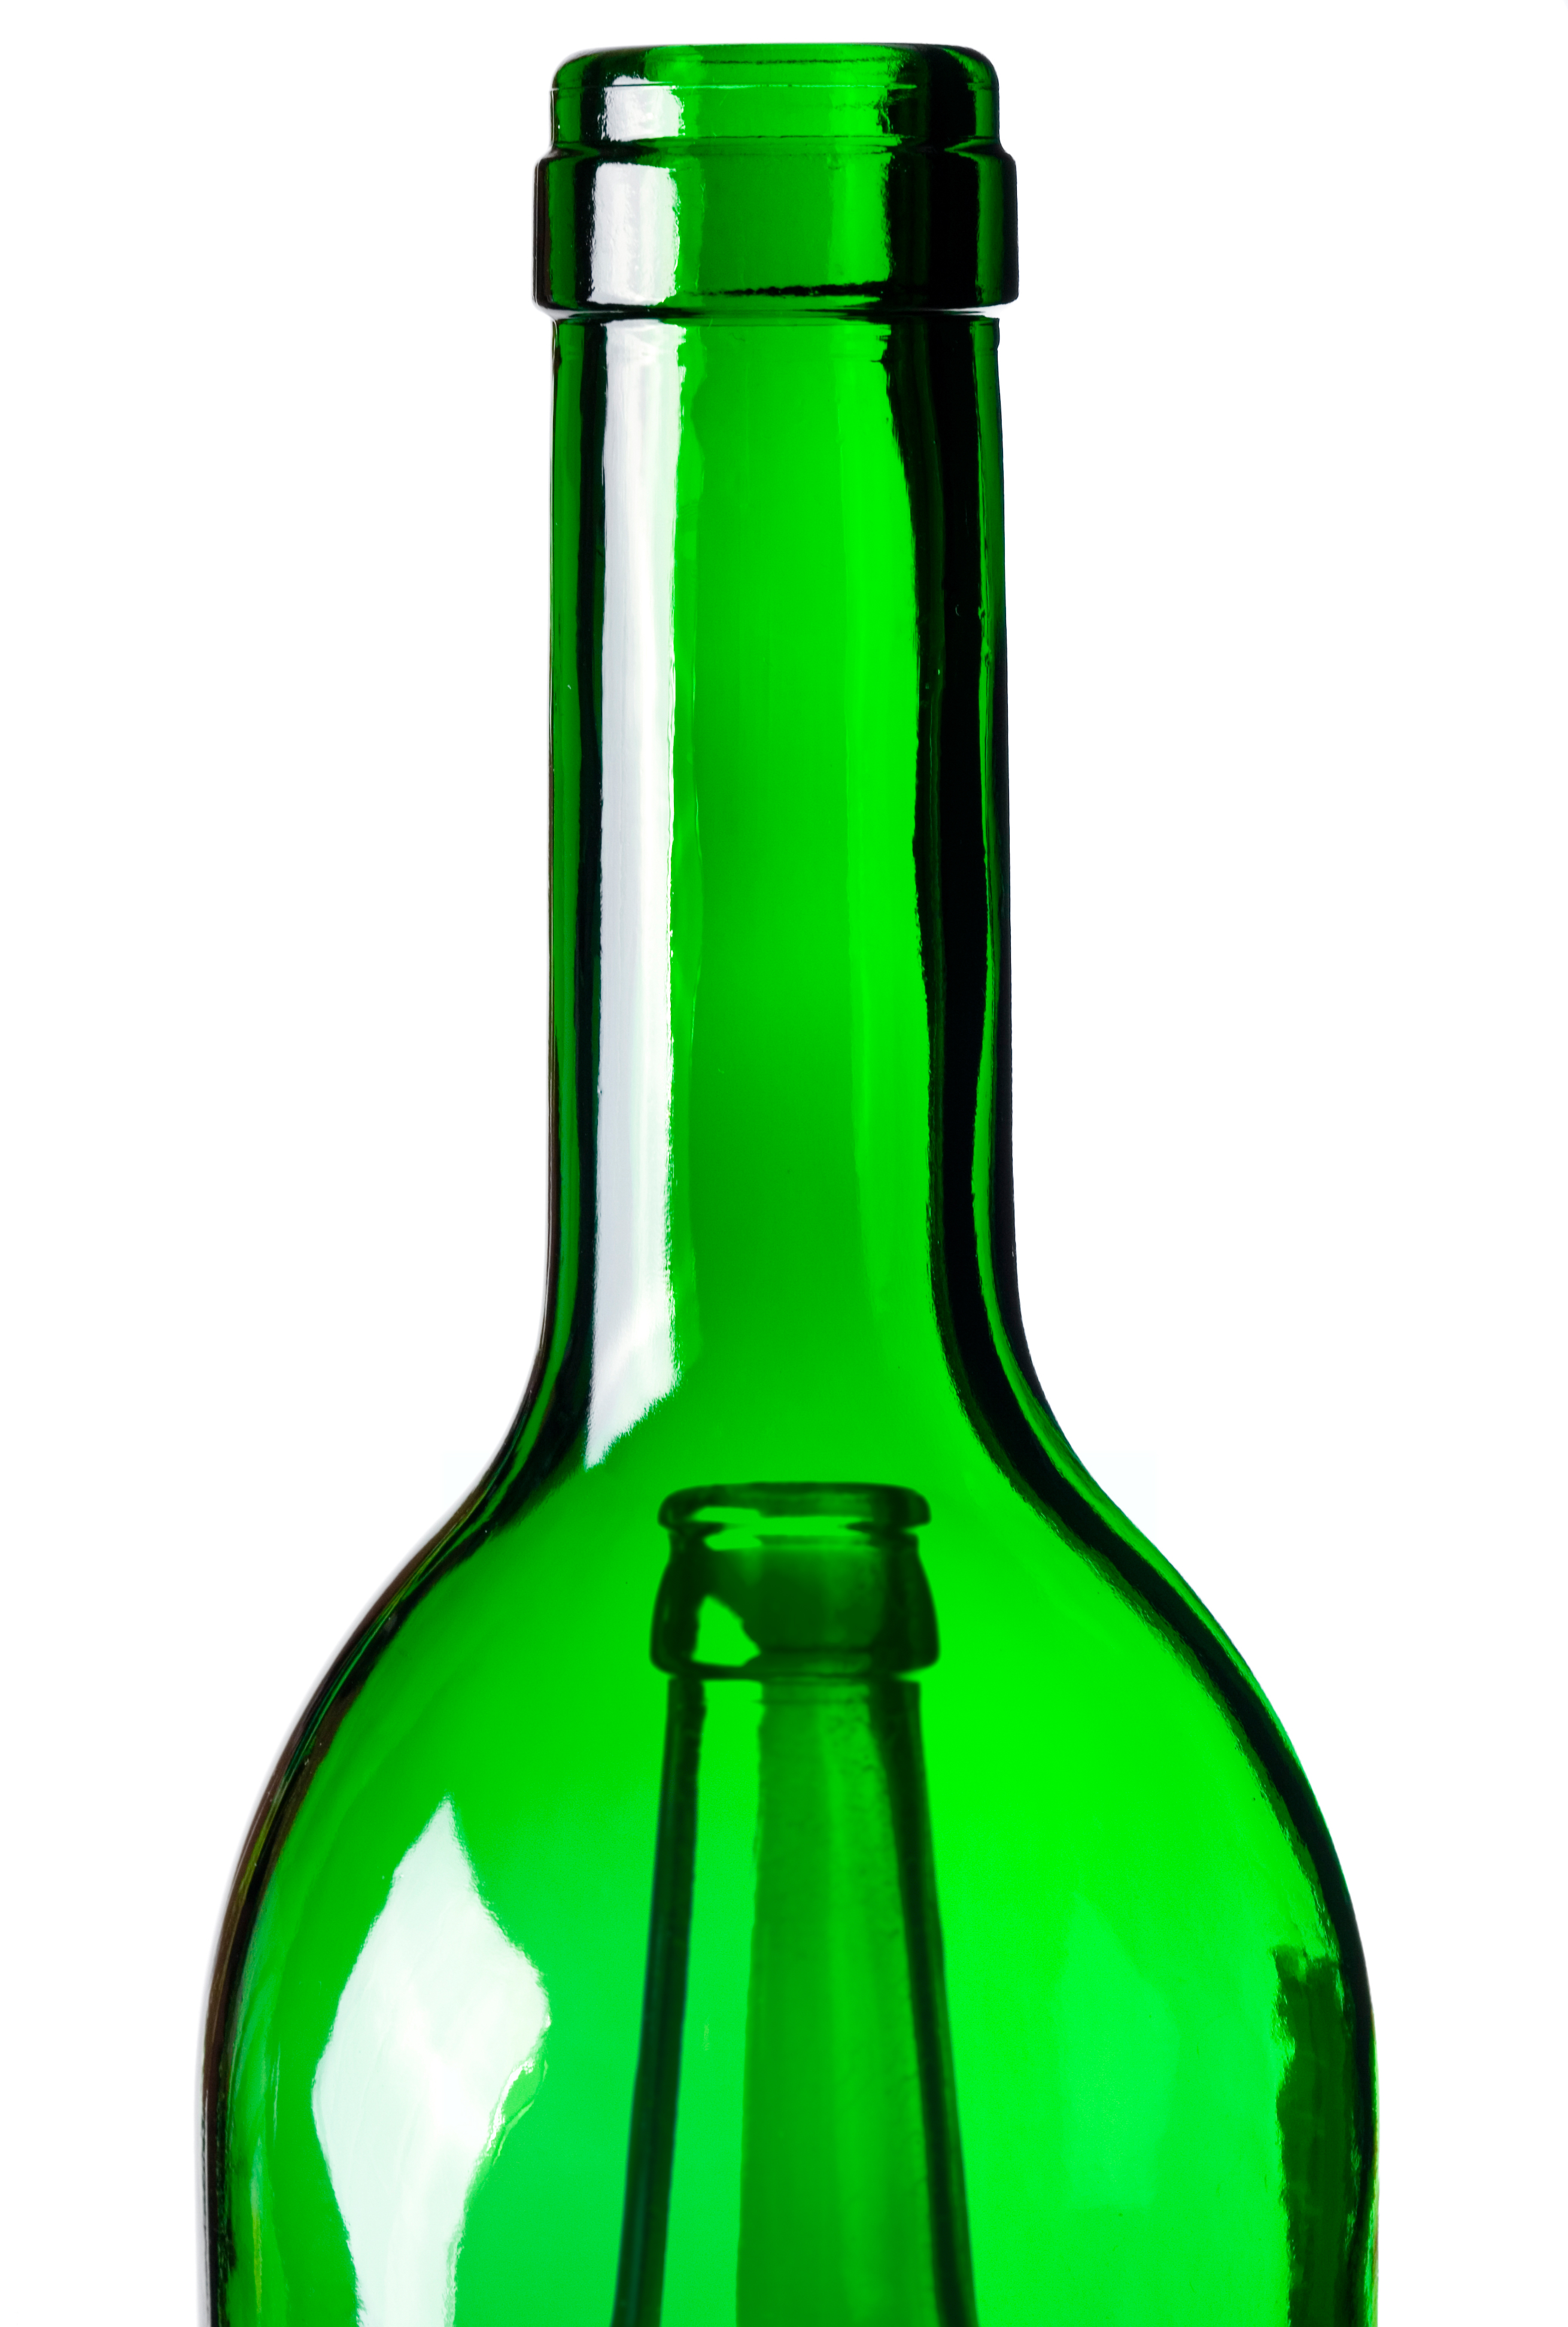 Вода в зеленой стеклянной бутылке. Бутылка. Горлышко стеклянной бутылки. В бутылке зеленый. Бутылка зеленая стеклянная.